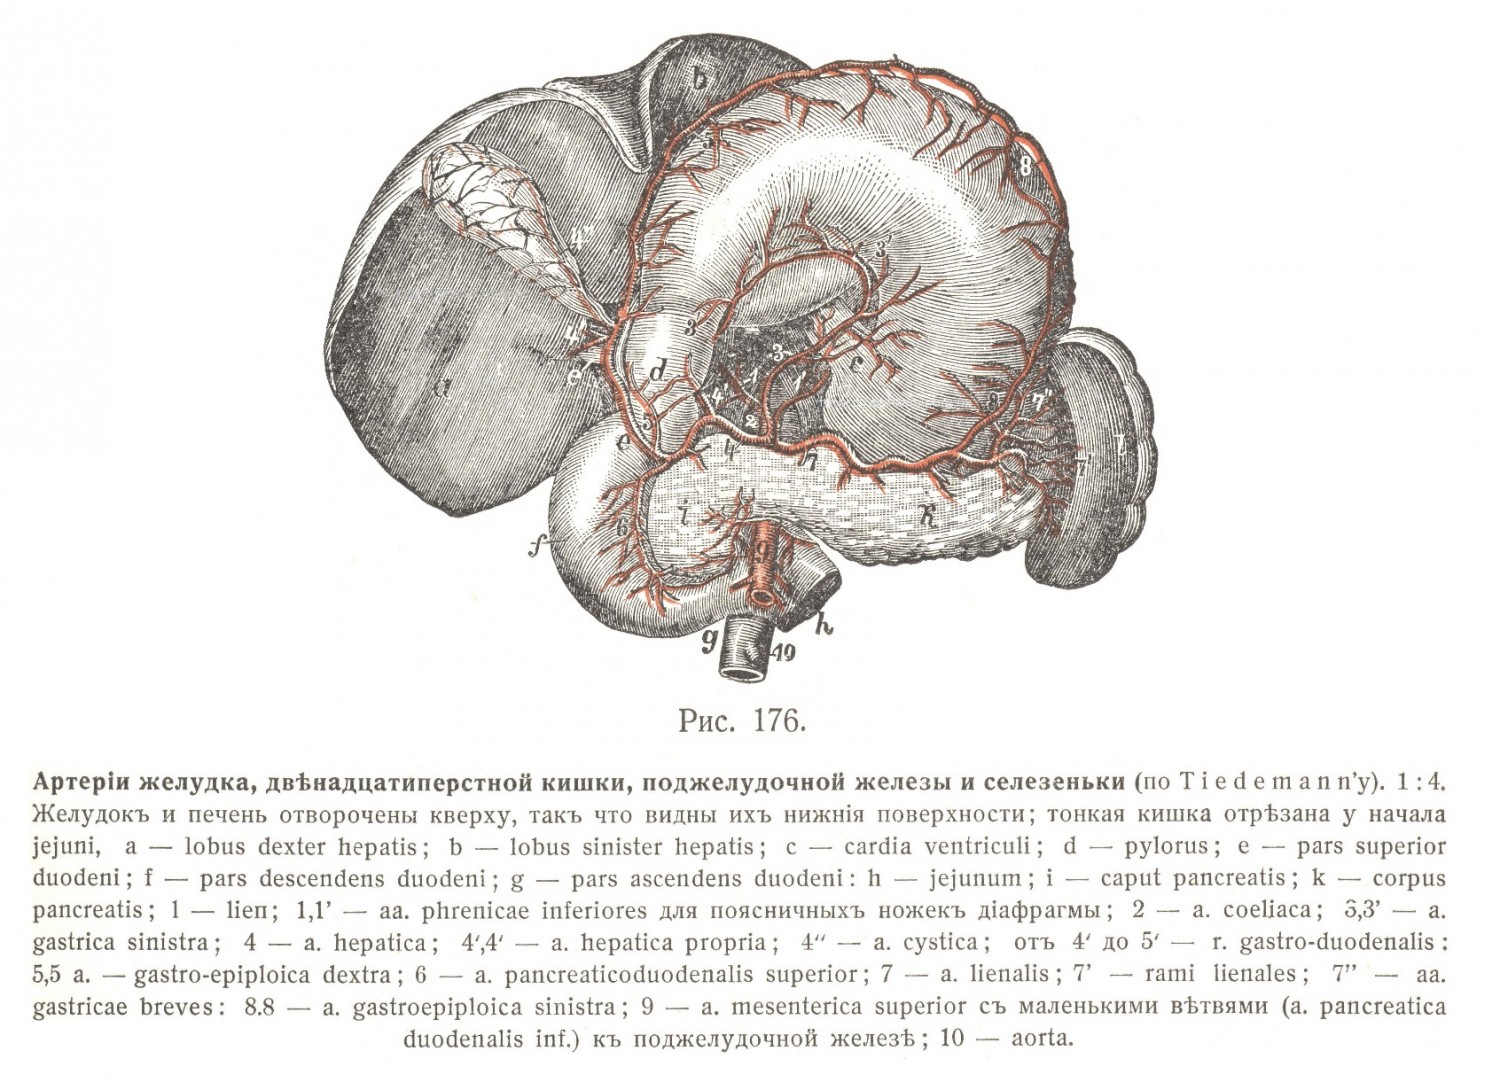 Артерии желудка, двенадцатиперстной кишки, поджелудочной железы